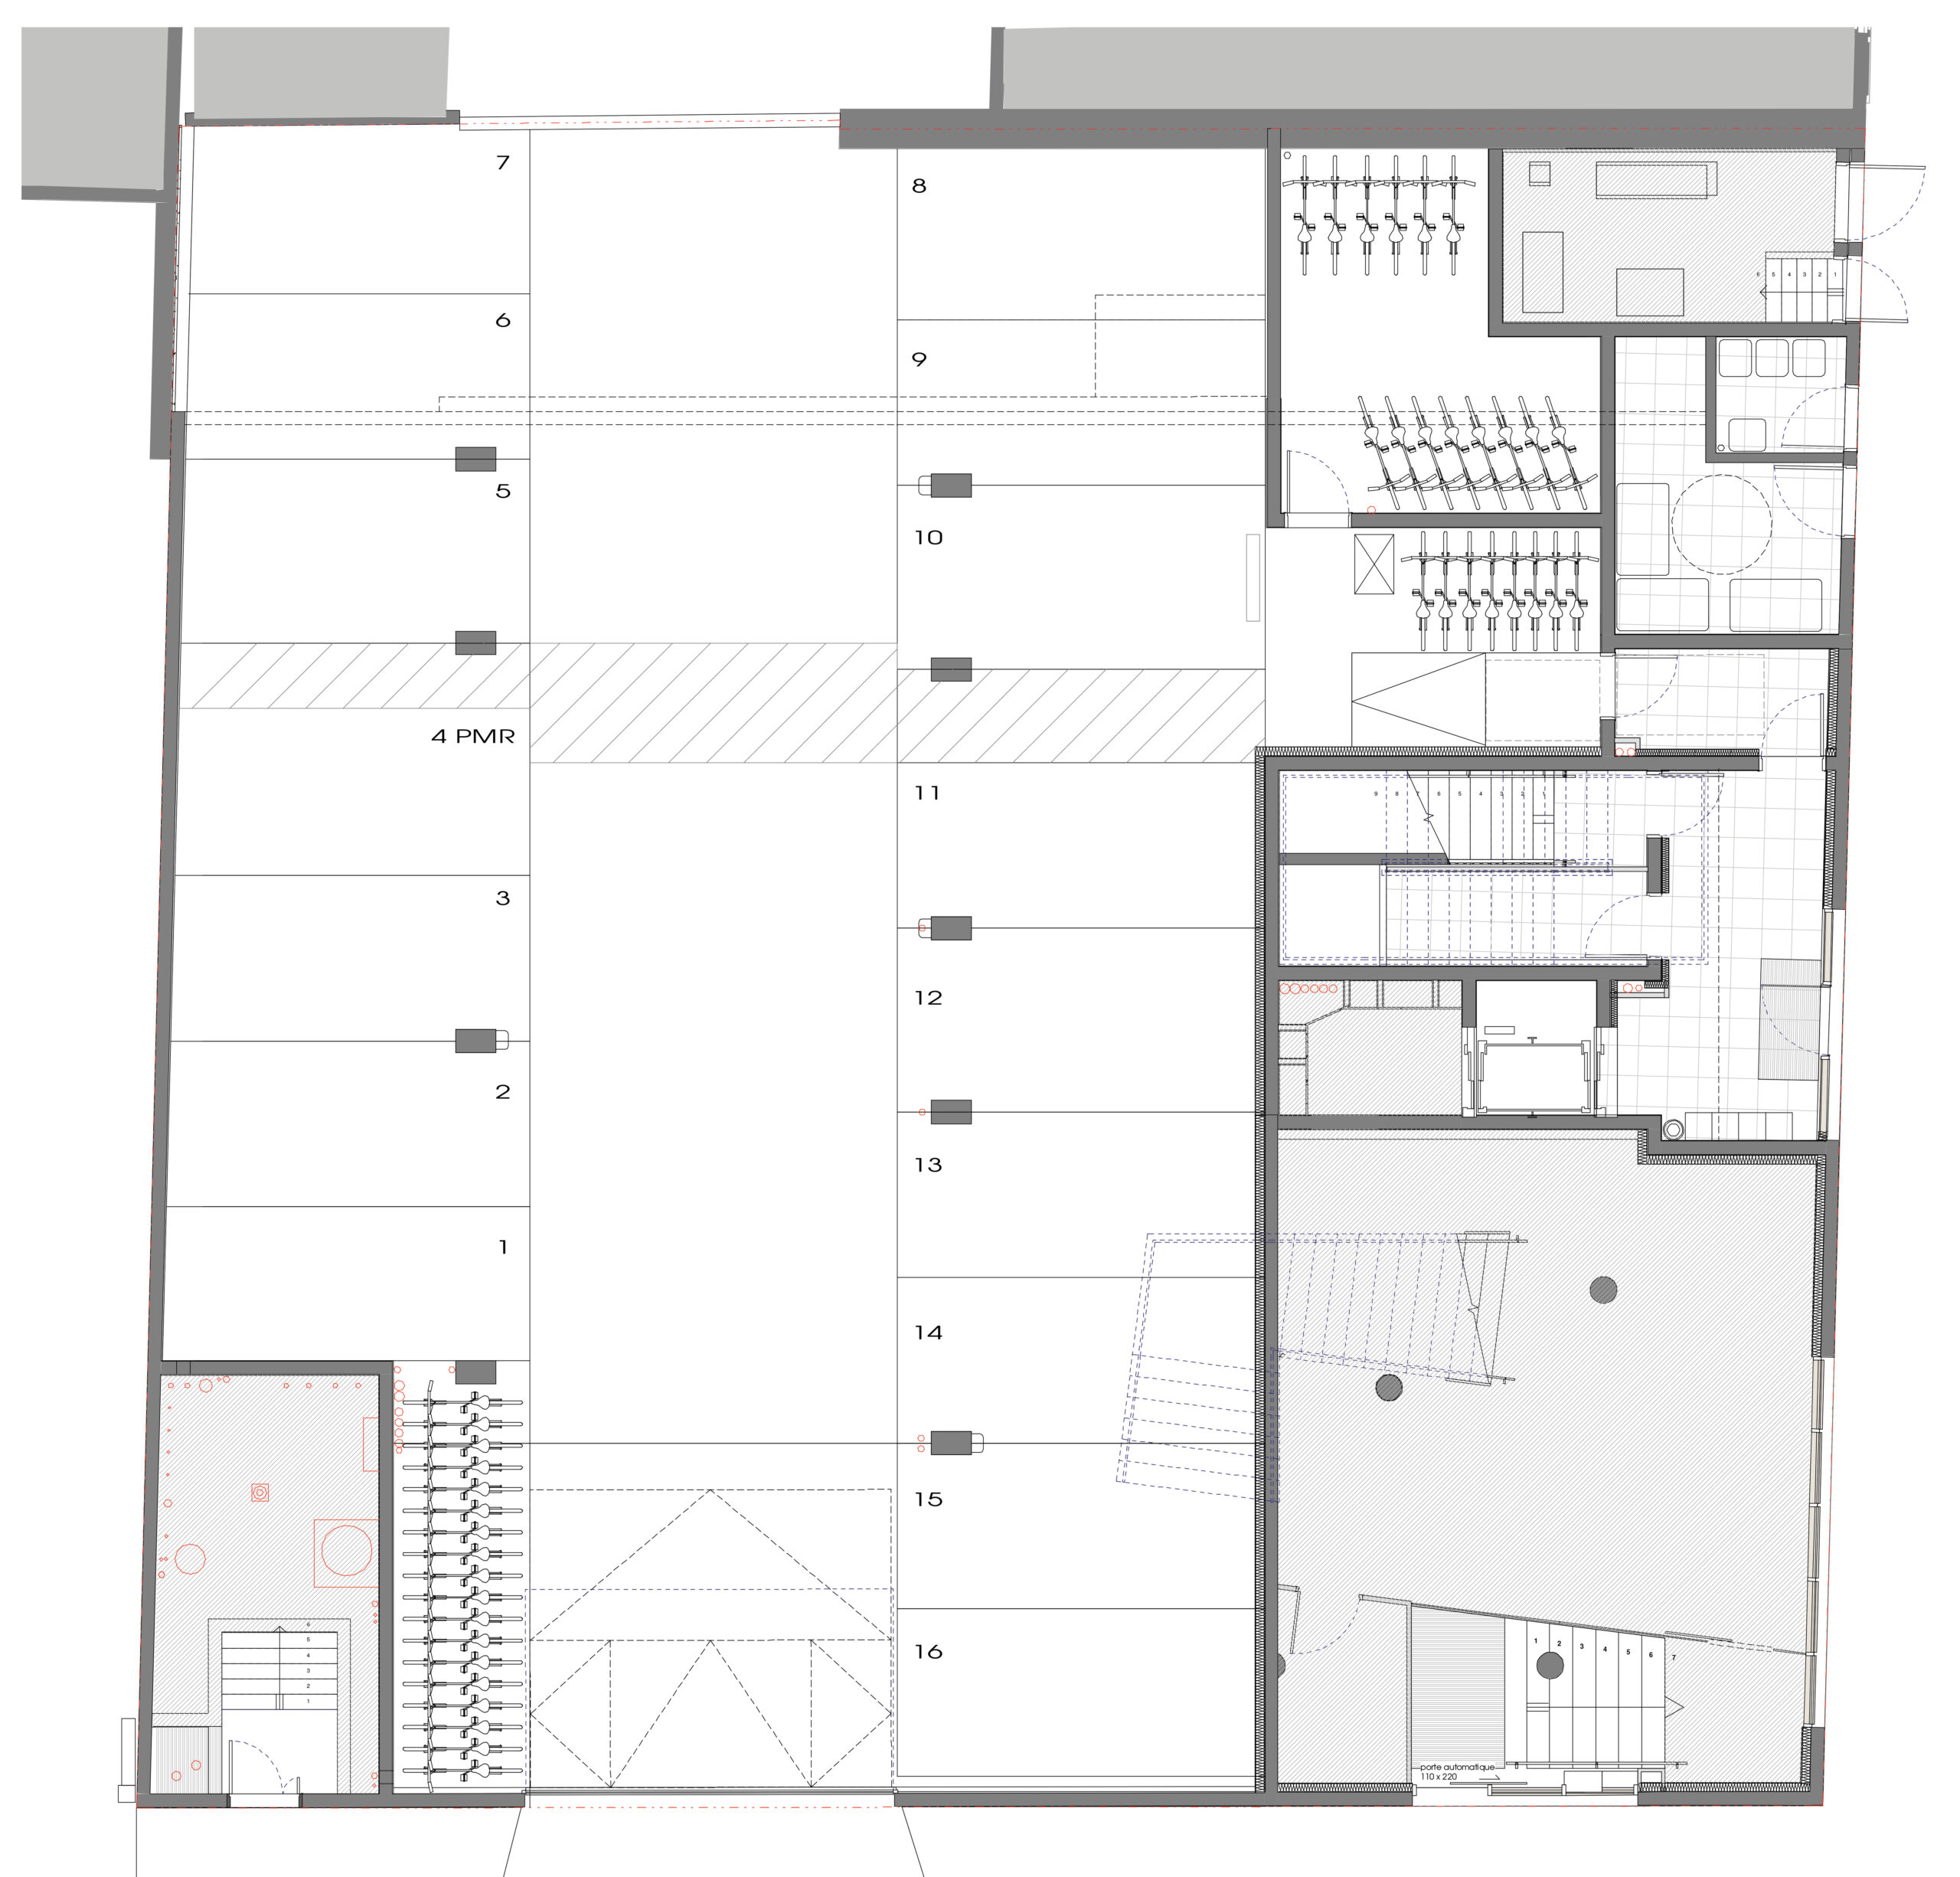 Plan de niveau d'accès à l'immeuble / Bulle Architectes